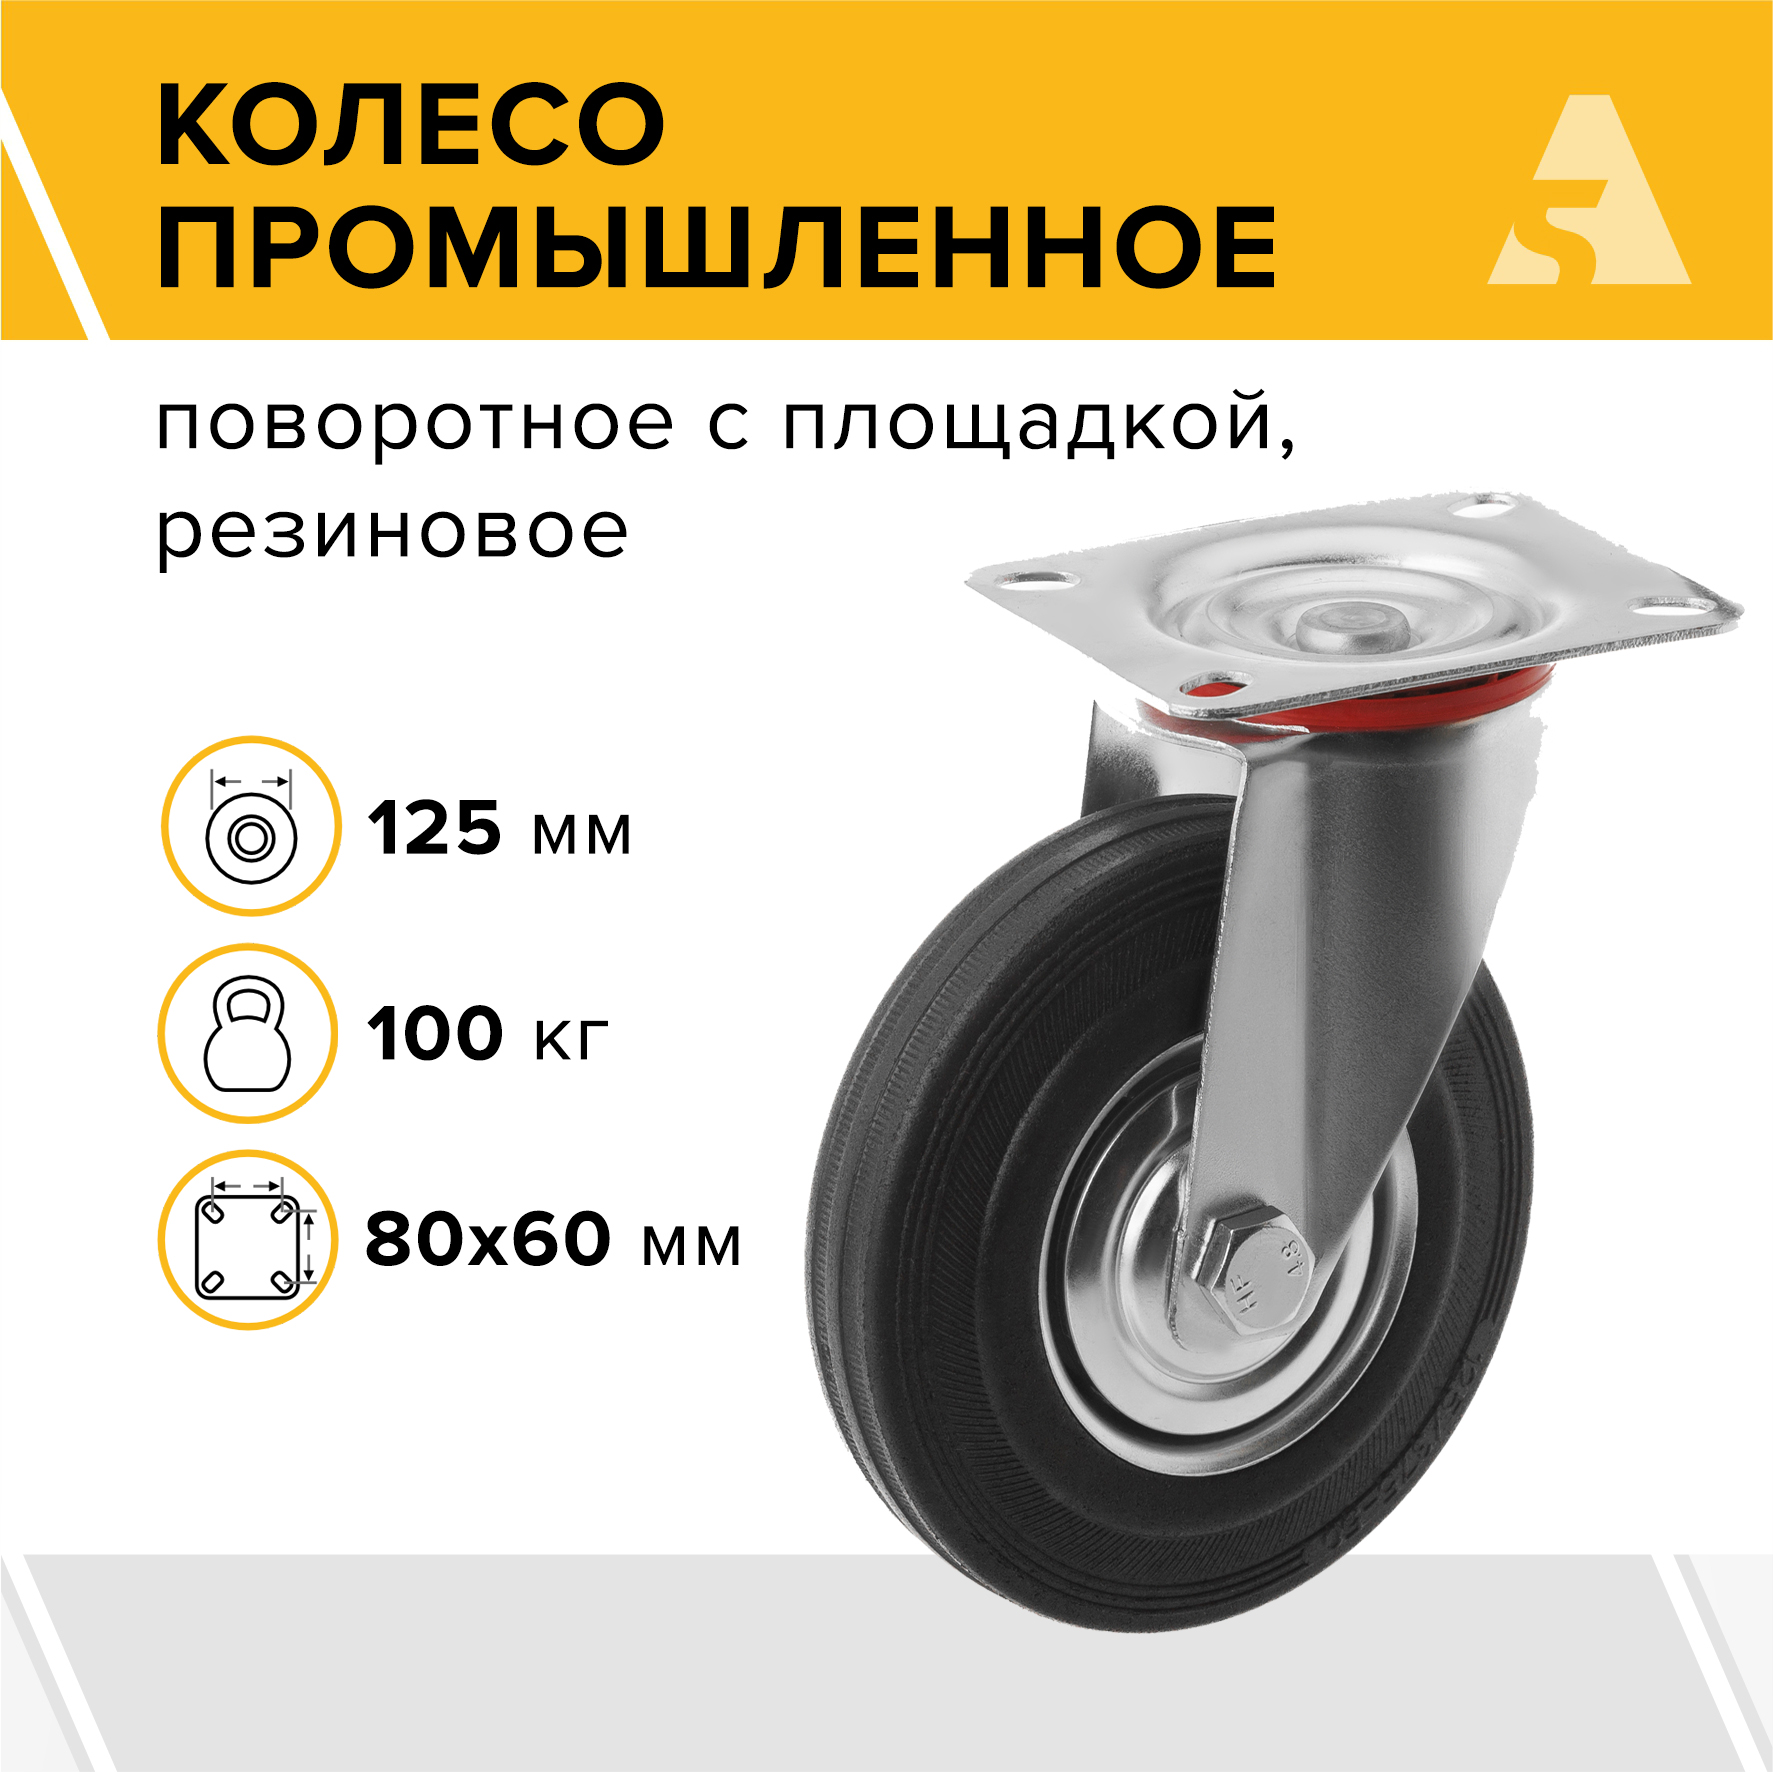 Колесо промышленное А5 SC 55 1000009 промышленное усиленное поворотное колесо а5